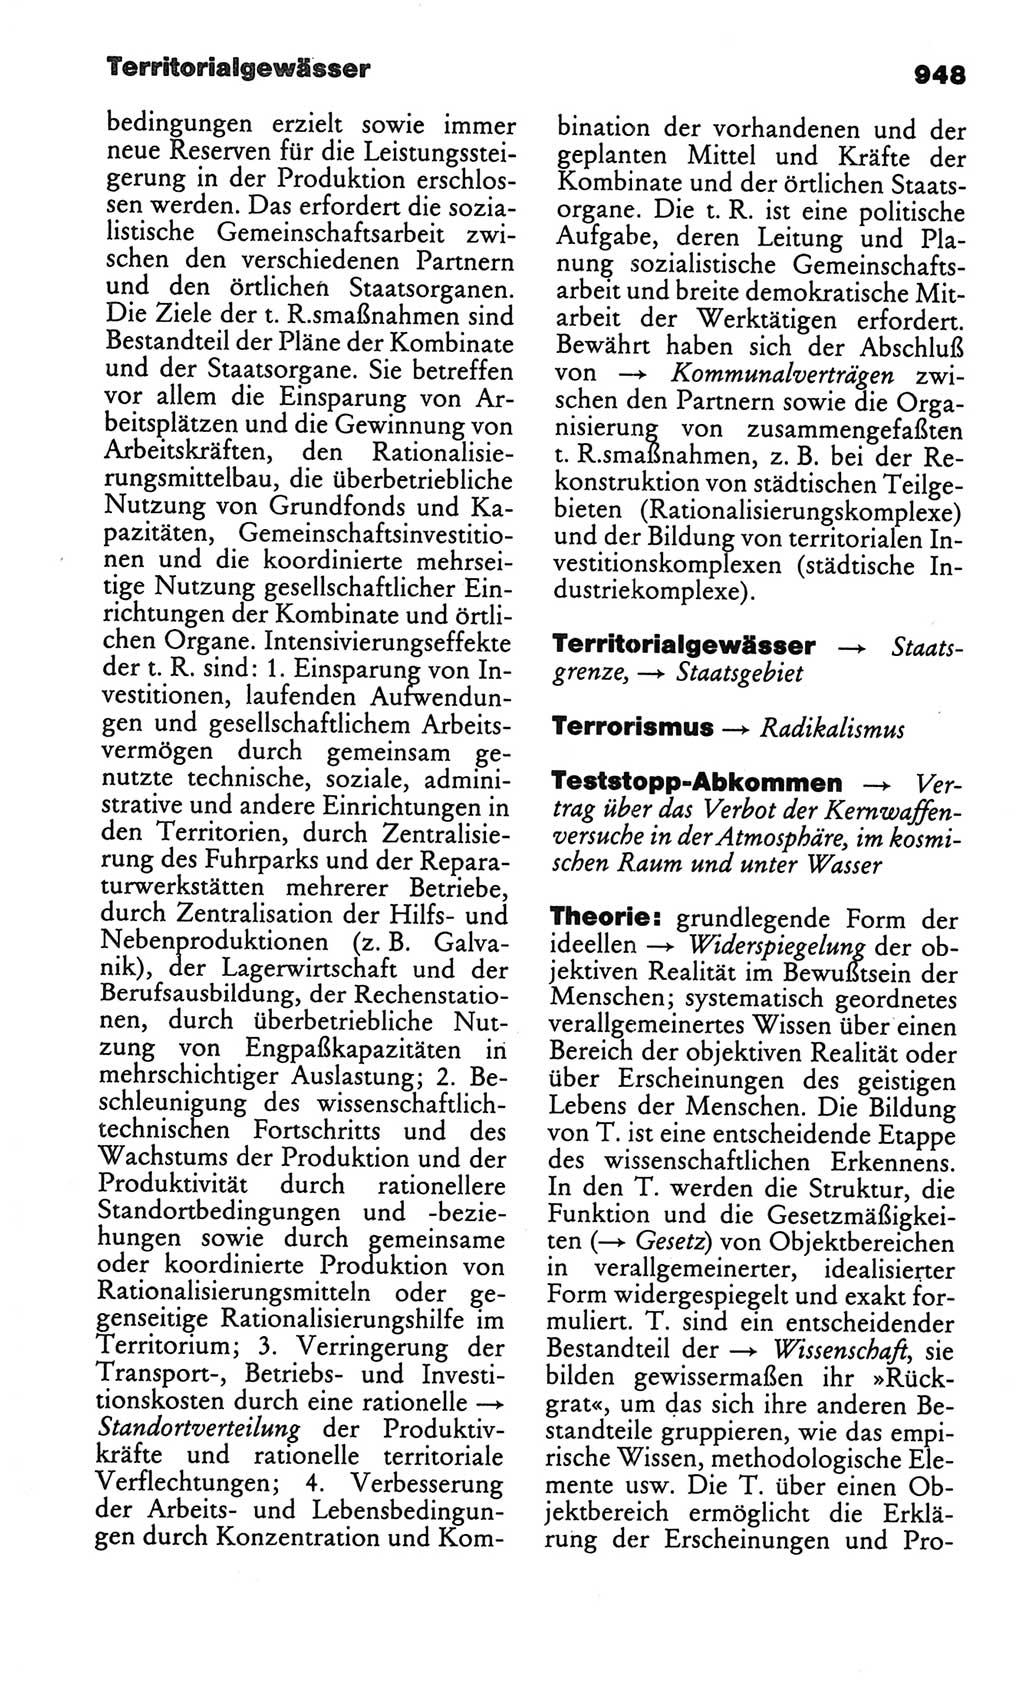 Kleines politisches Wörterbuch [Deutsche Demokratische Republik (DDR)] 1986, Seite 948 (Kl. pol. Wb. DDR 1986, S. 948)